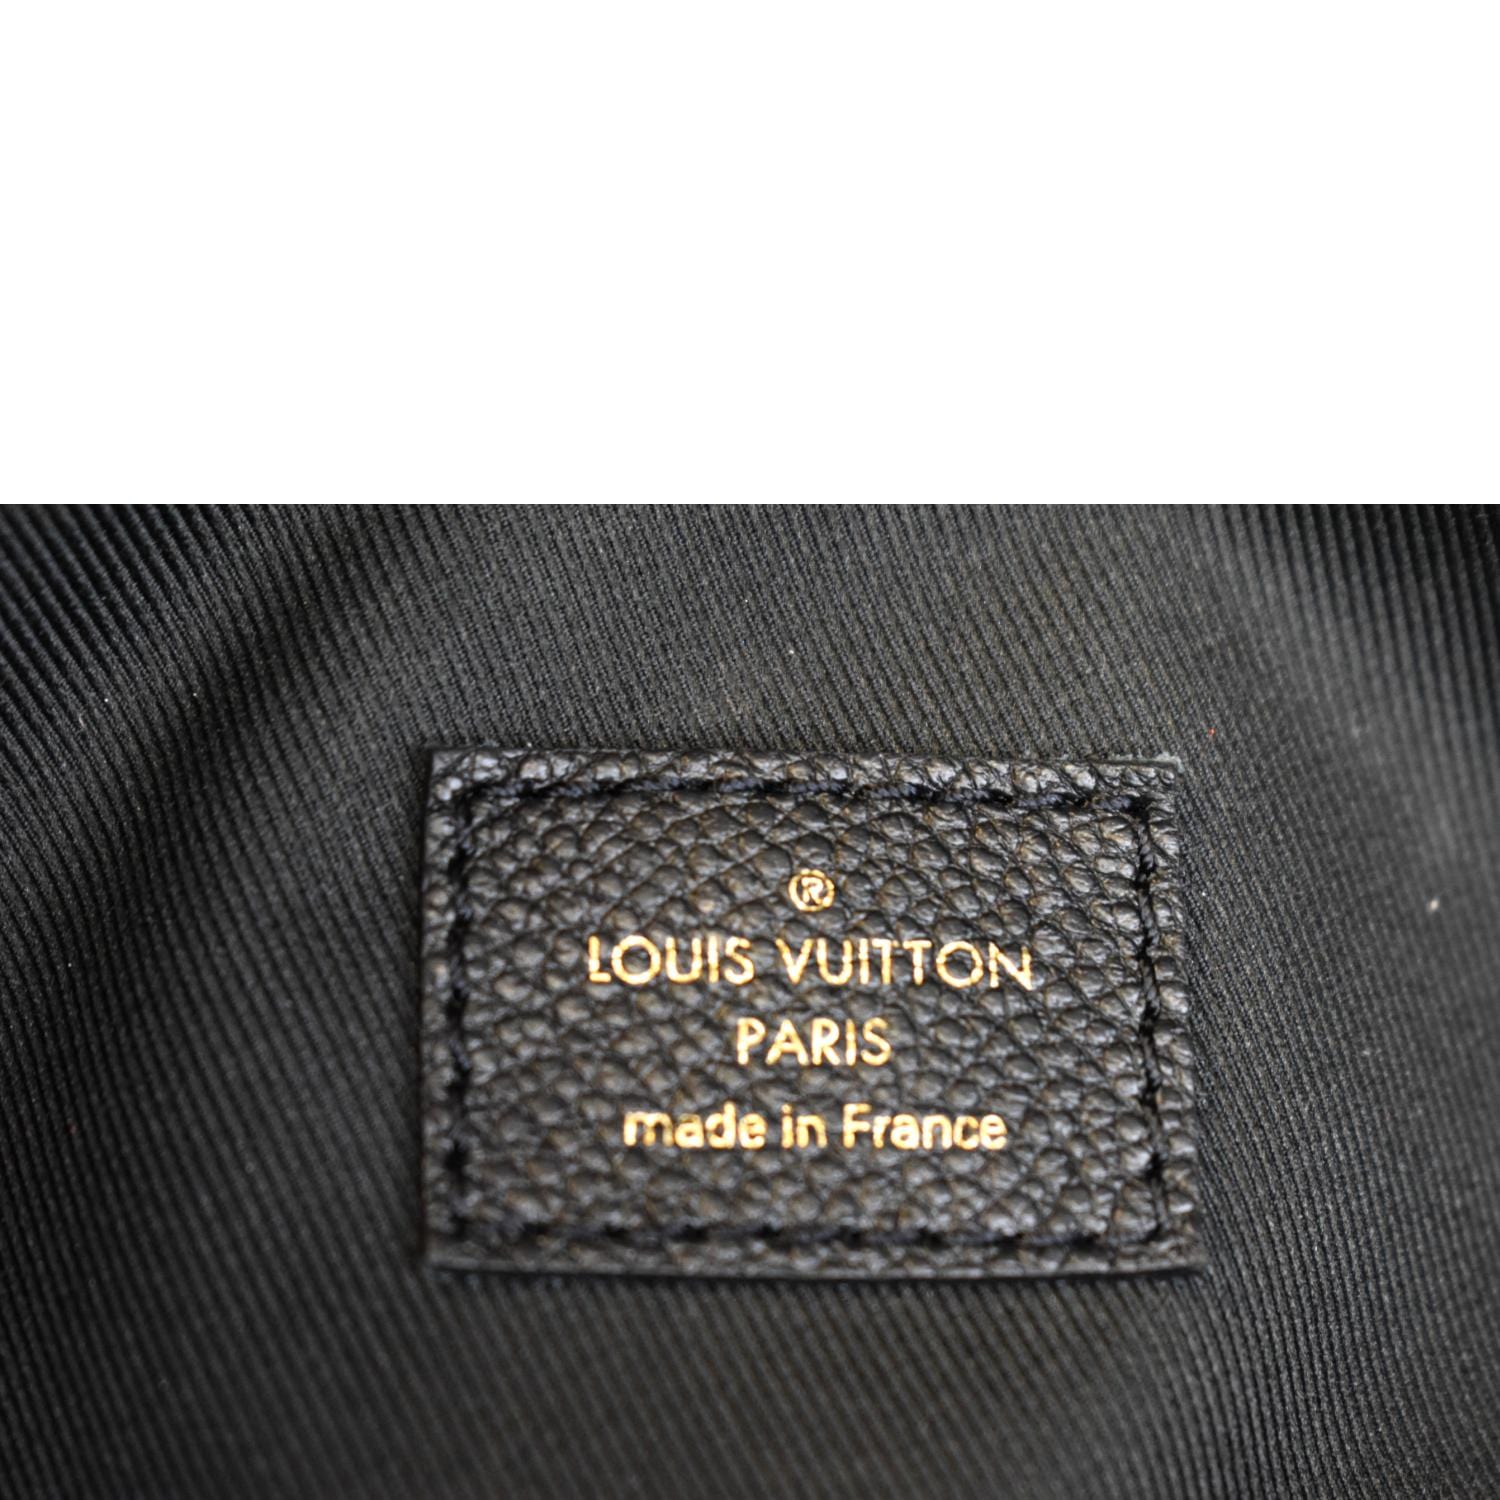 Louis Vuitton Monogram Empreinte Ponthieu PM